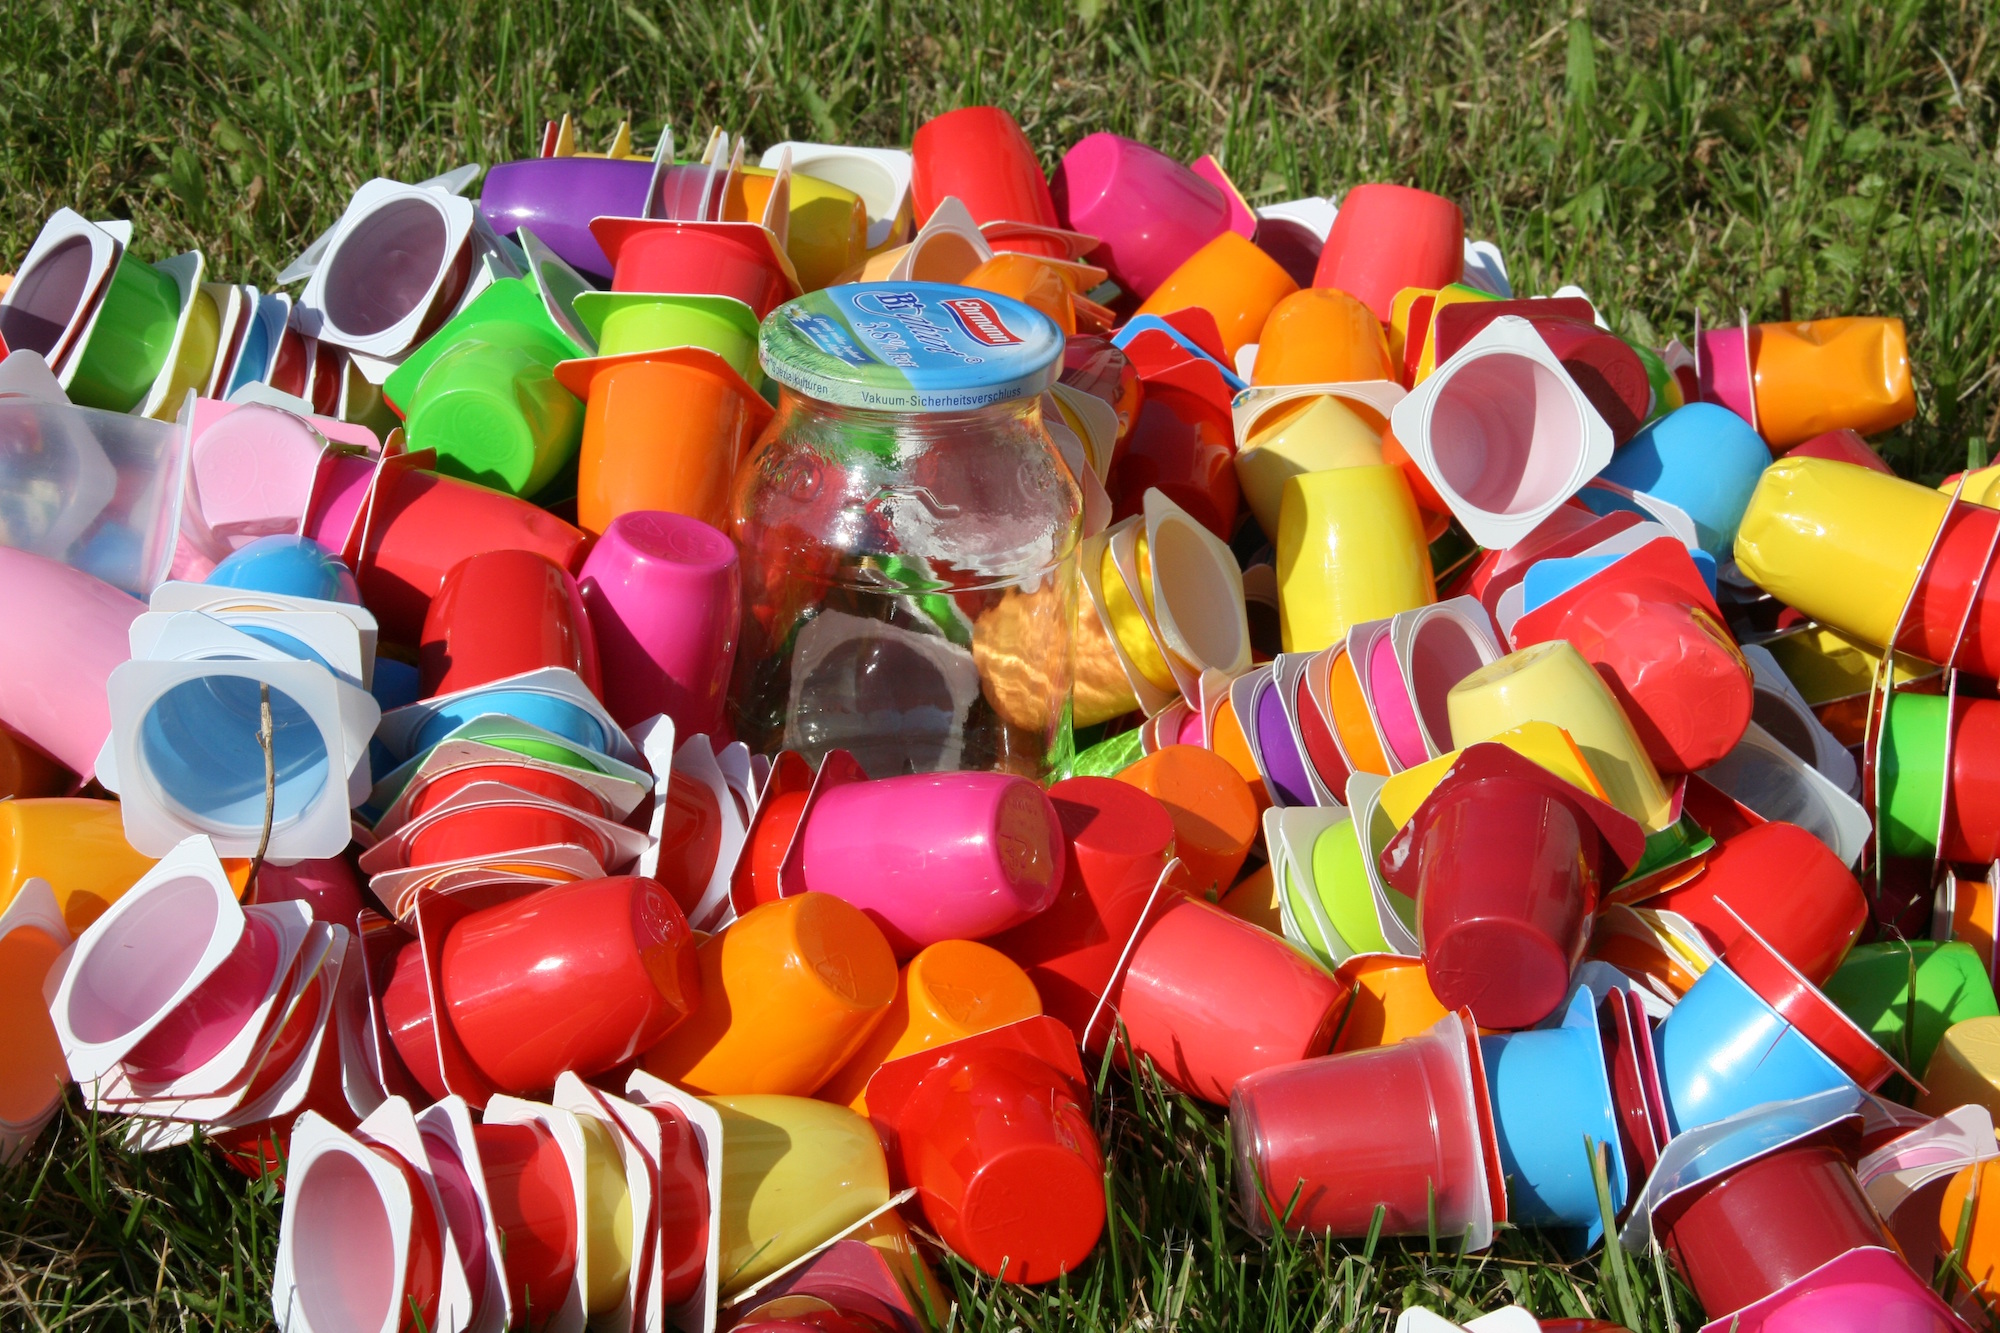 Plastikmüll vermeiden, Rohstoffe in den Recyclingkreislauf geben, weniger Fernreisen – wir können alle mit unserem Verhalten etwas zum Klimaschutz beitragen. (c) www.pixabay.com